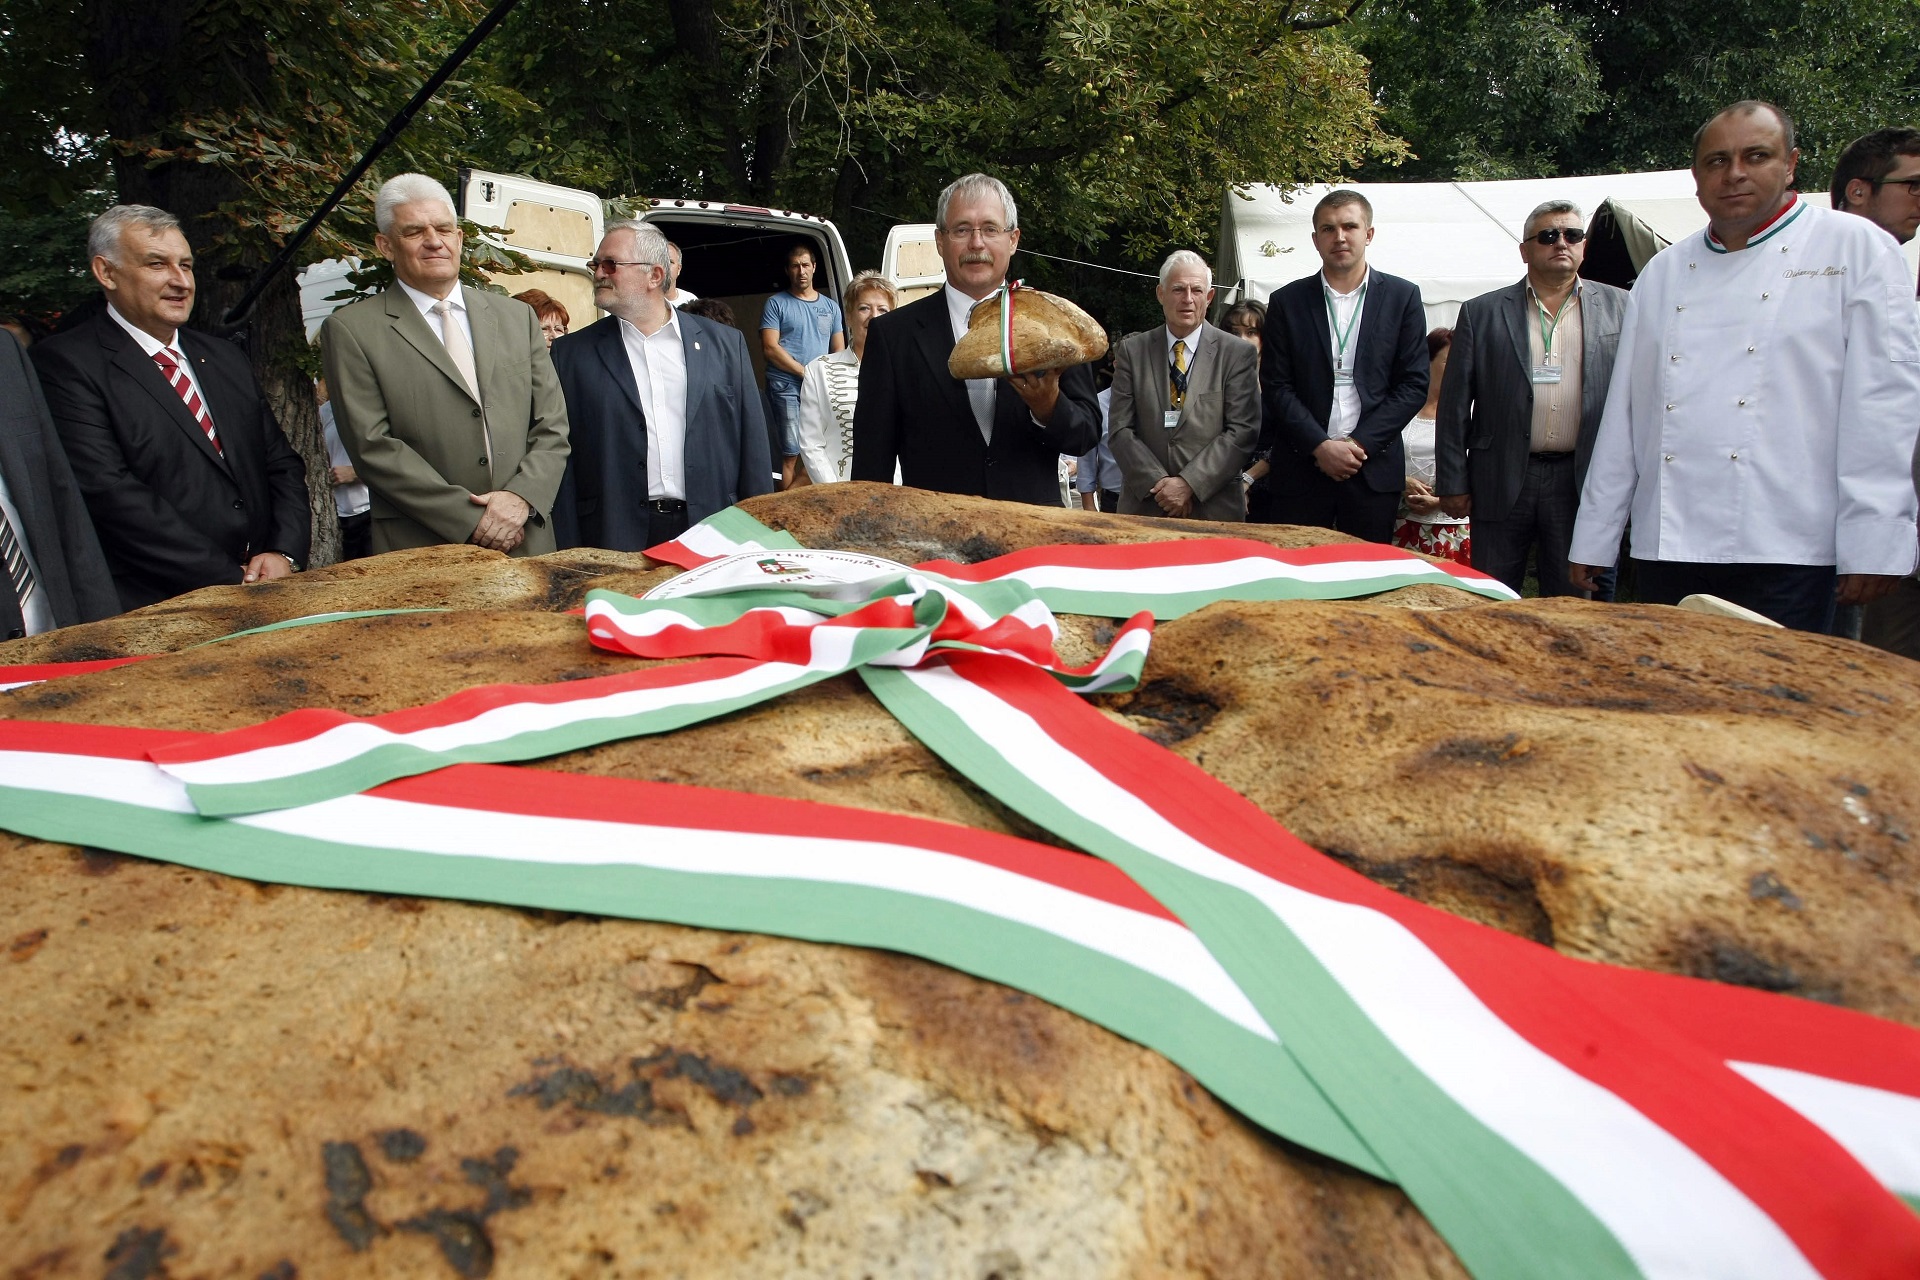 A magyar kormány megalkotja az új kenyeret